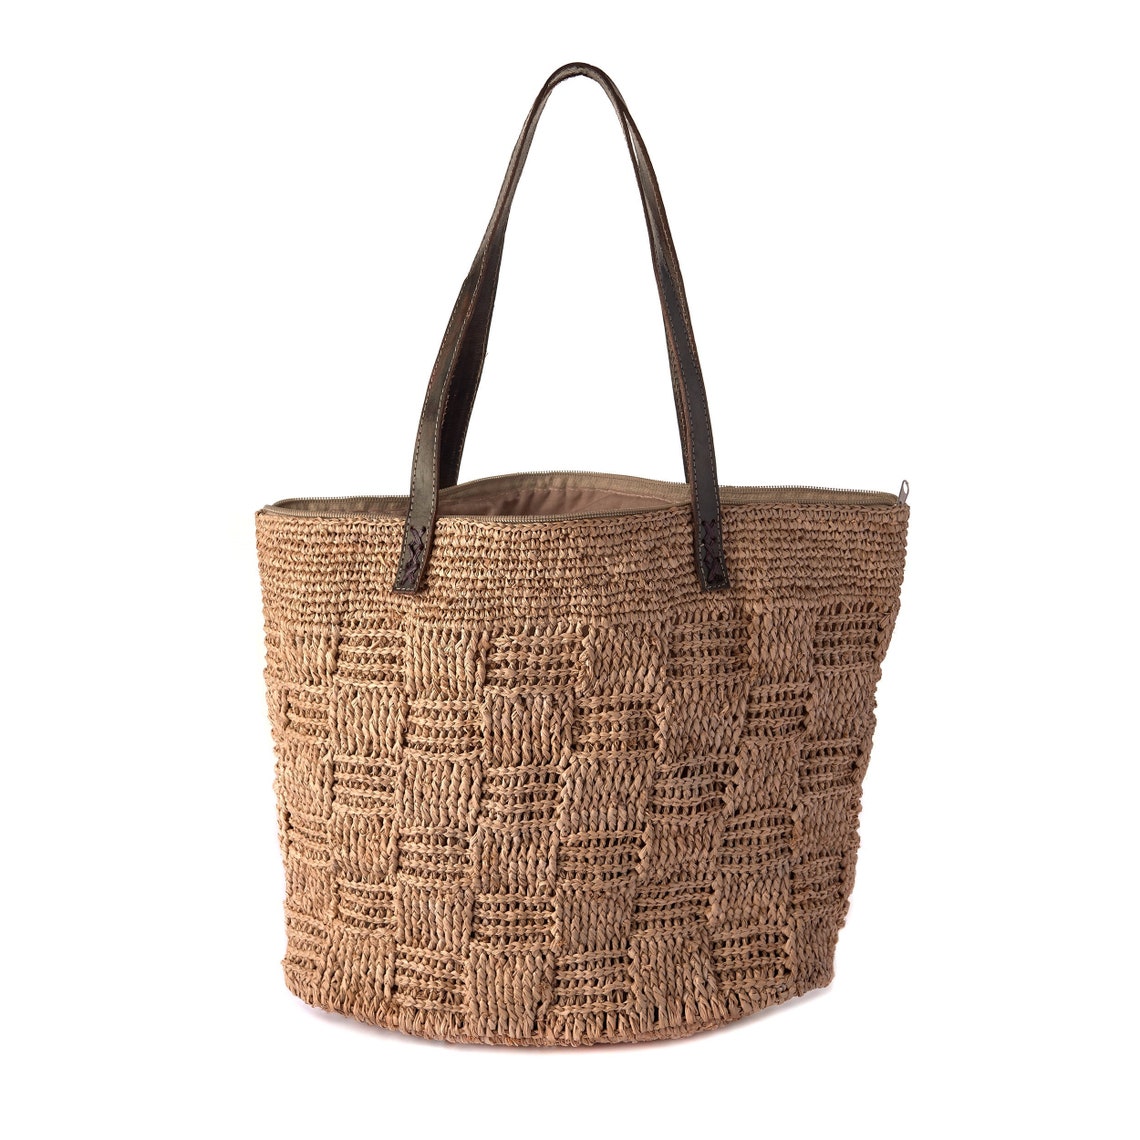 Raffia Bag Straw Bag Summer Bag Handmade Bag Natural Beige | Etsy